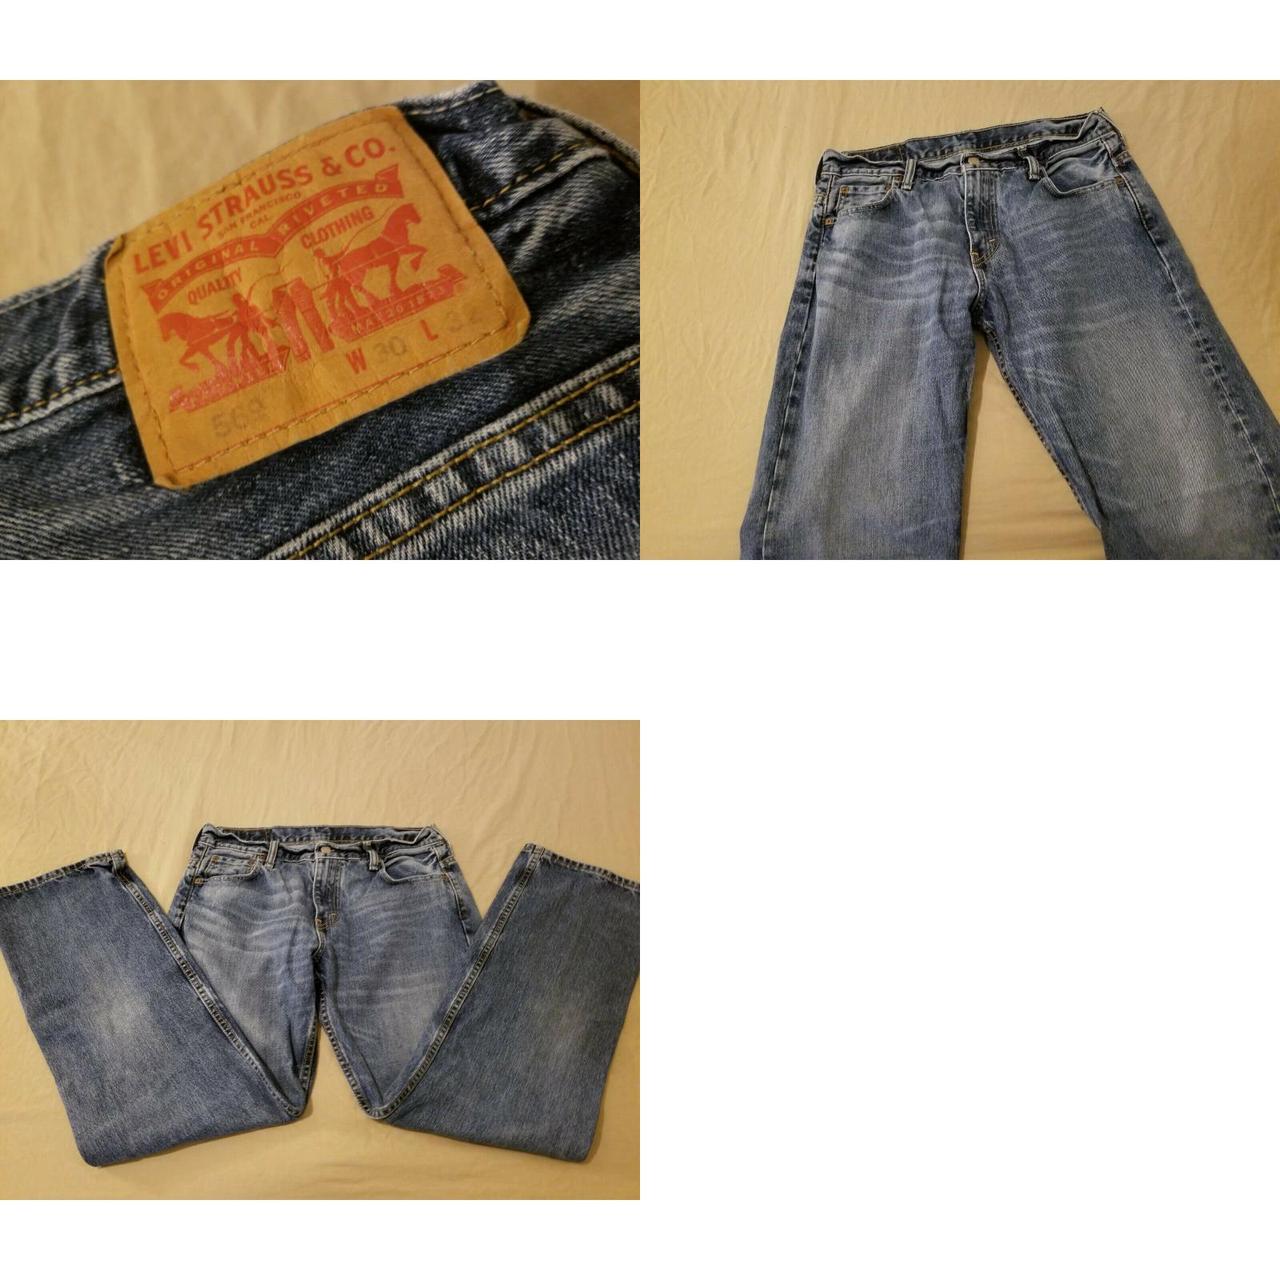 Product Image 4 - Mens Levis 569 Jeans 30x32